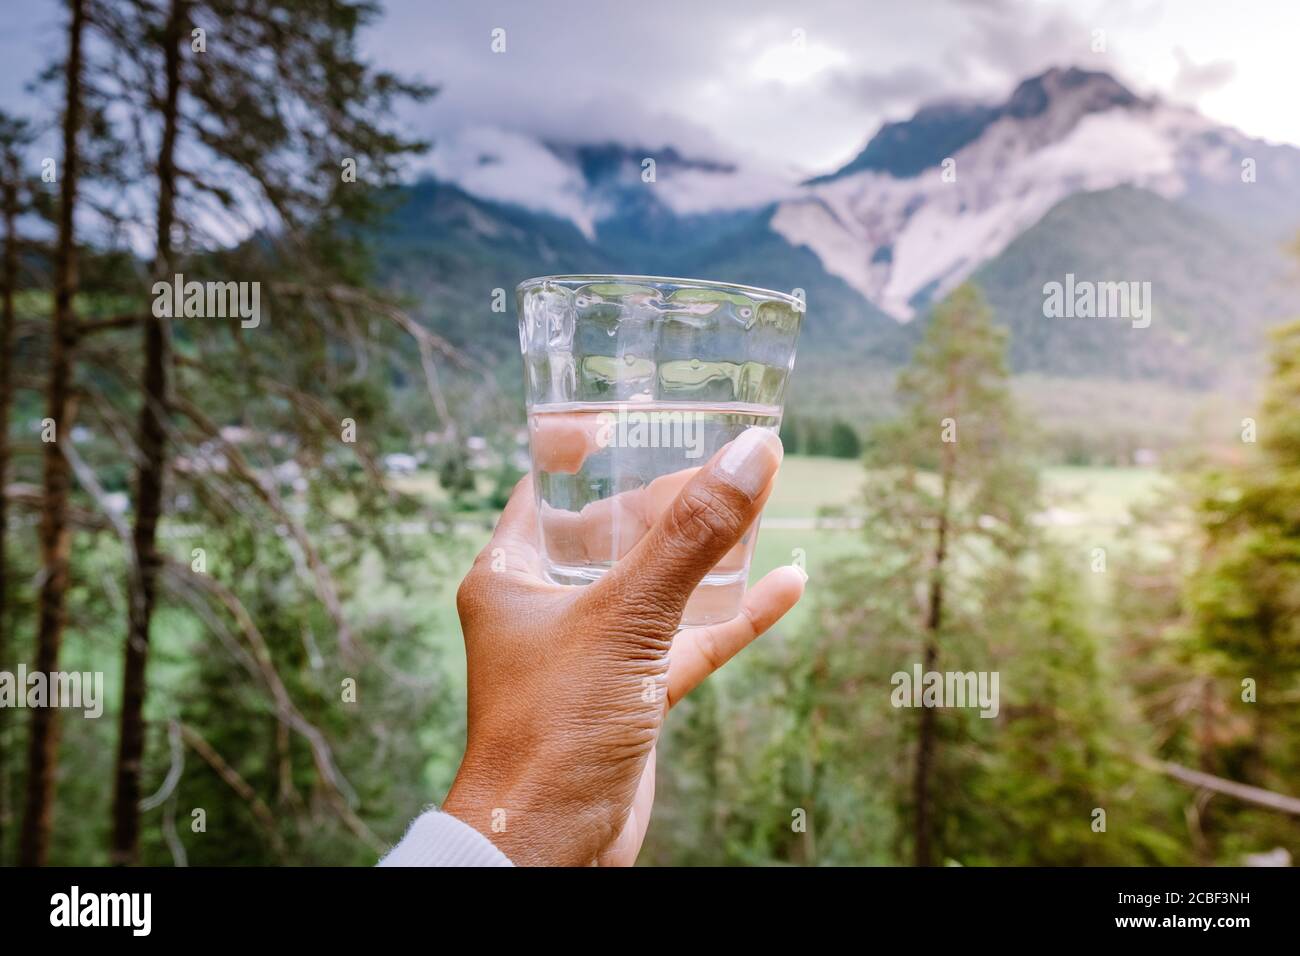 bicchiere d'acqua in mano che si affaccia sulle montagne, acqua potabile Foto Stock